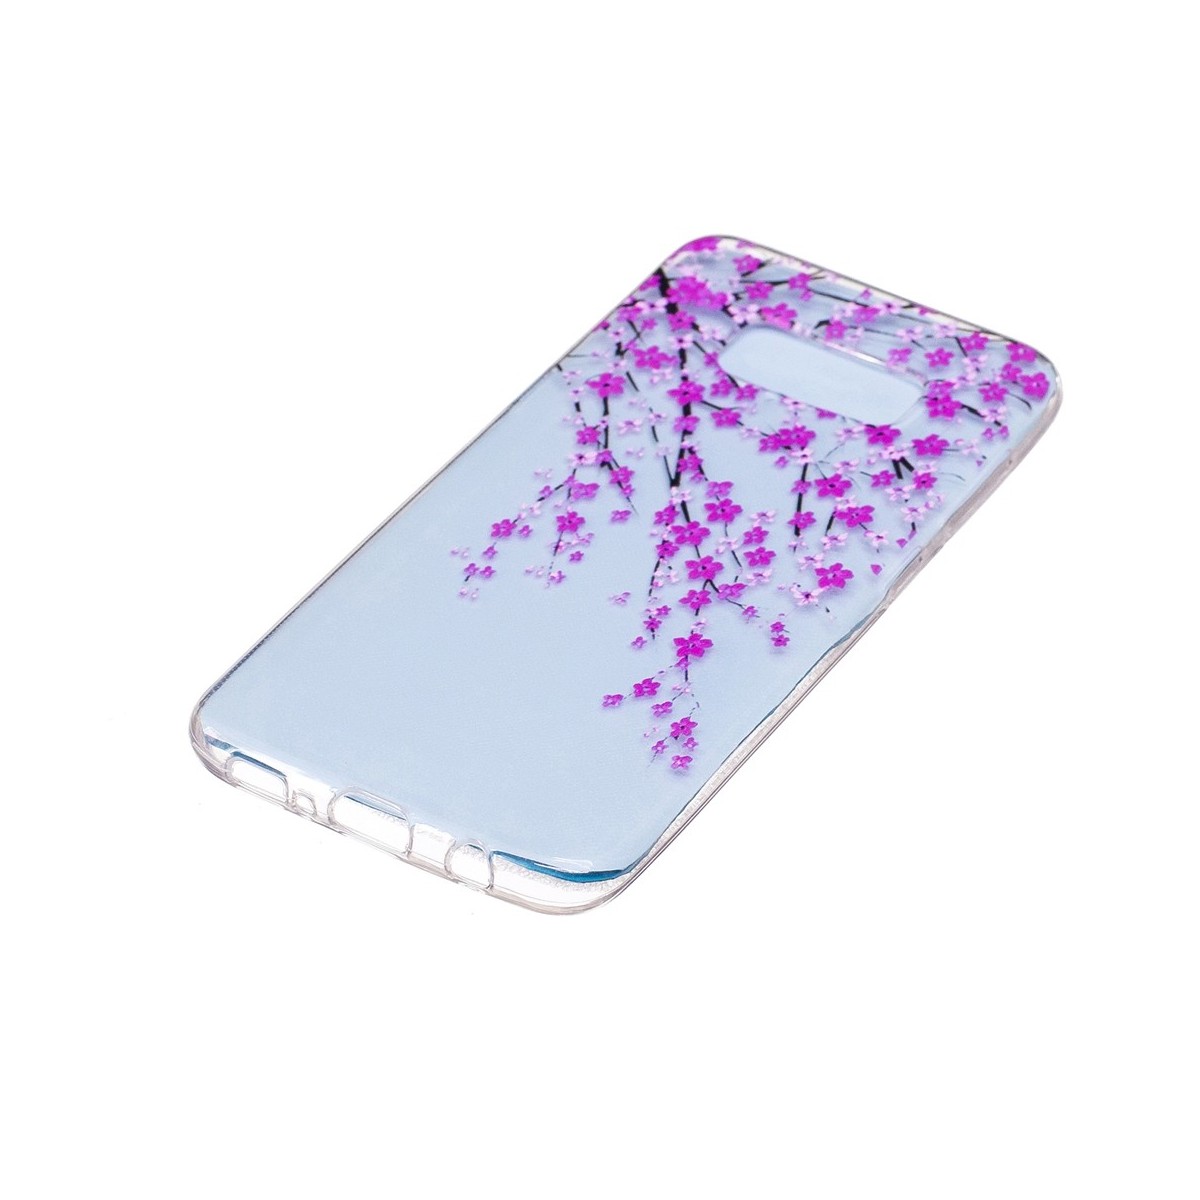 Coque Galaxy S8 Transparente souple motif Fleurs Japonaises - Crazy Kase